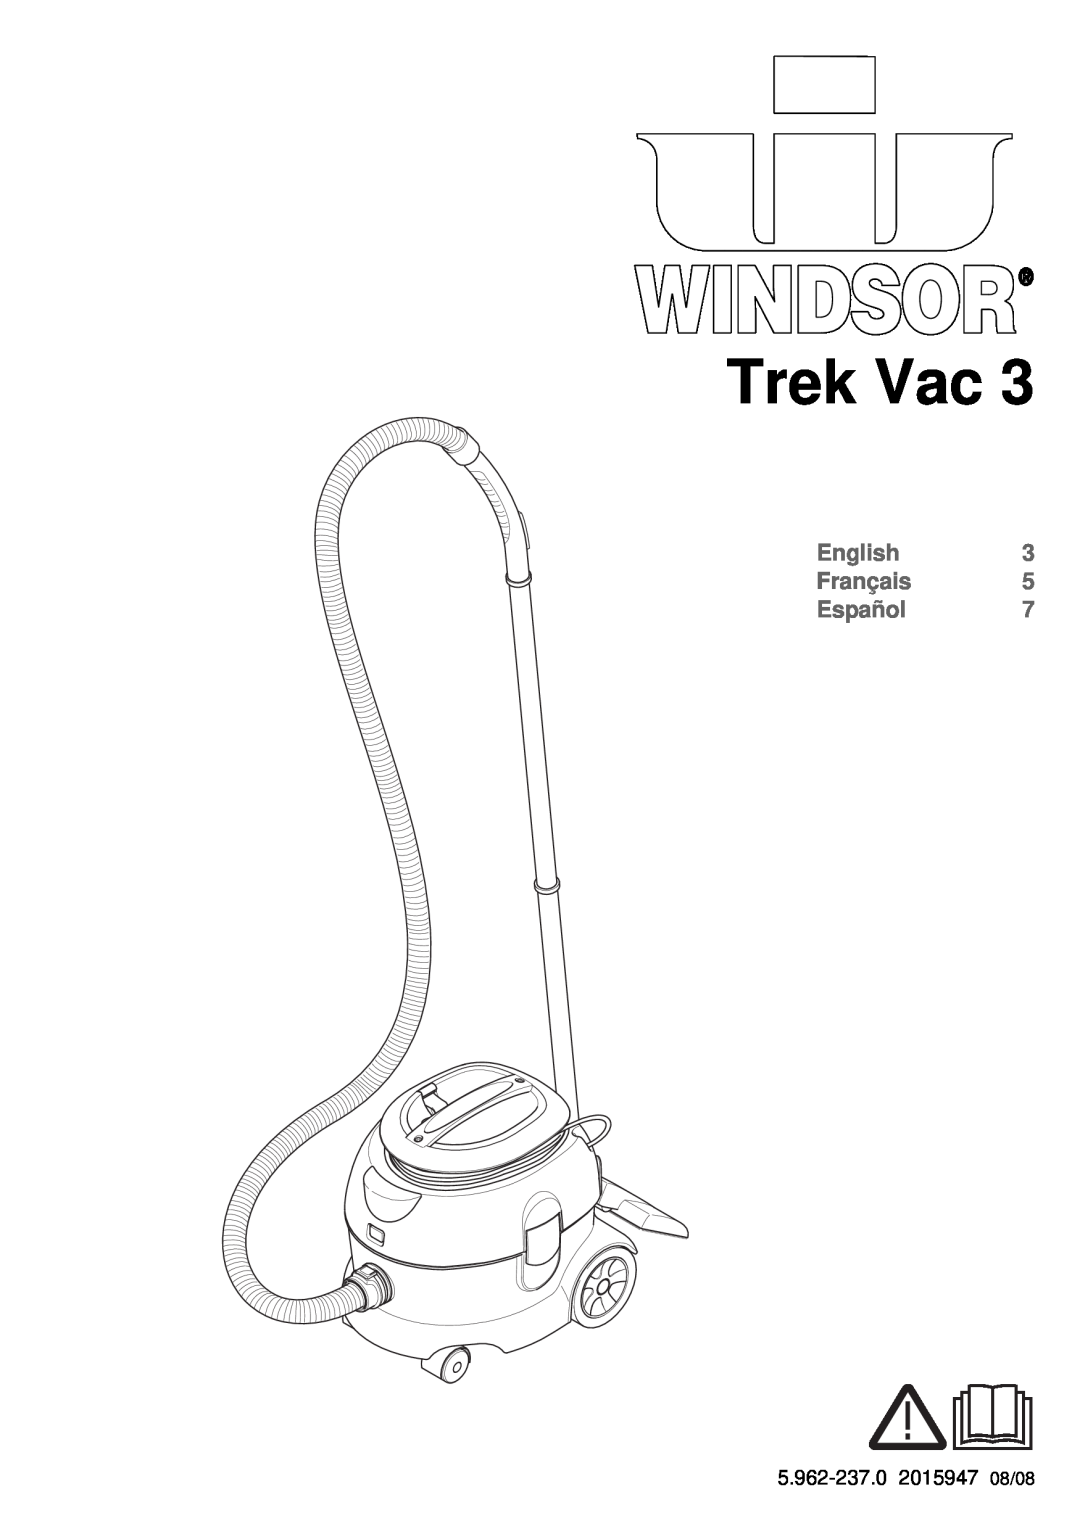 Windsor 3 manual Trek Vac, English Français Español 